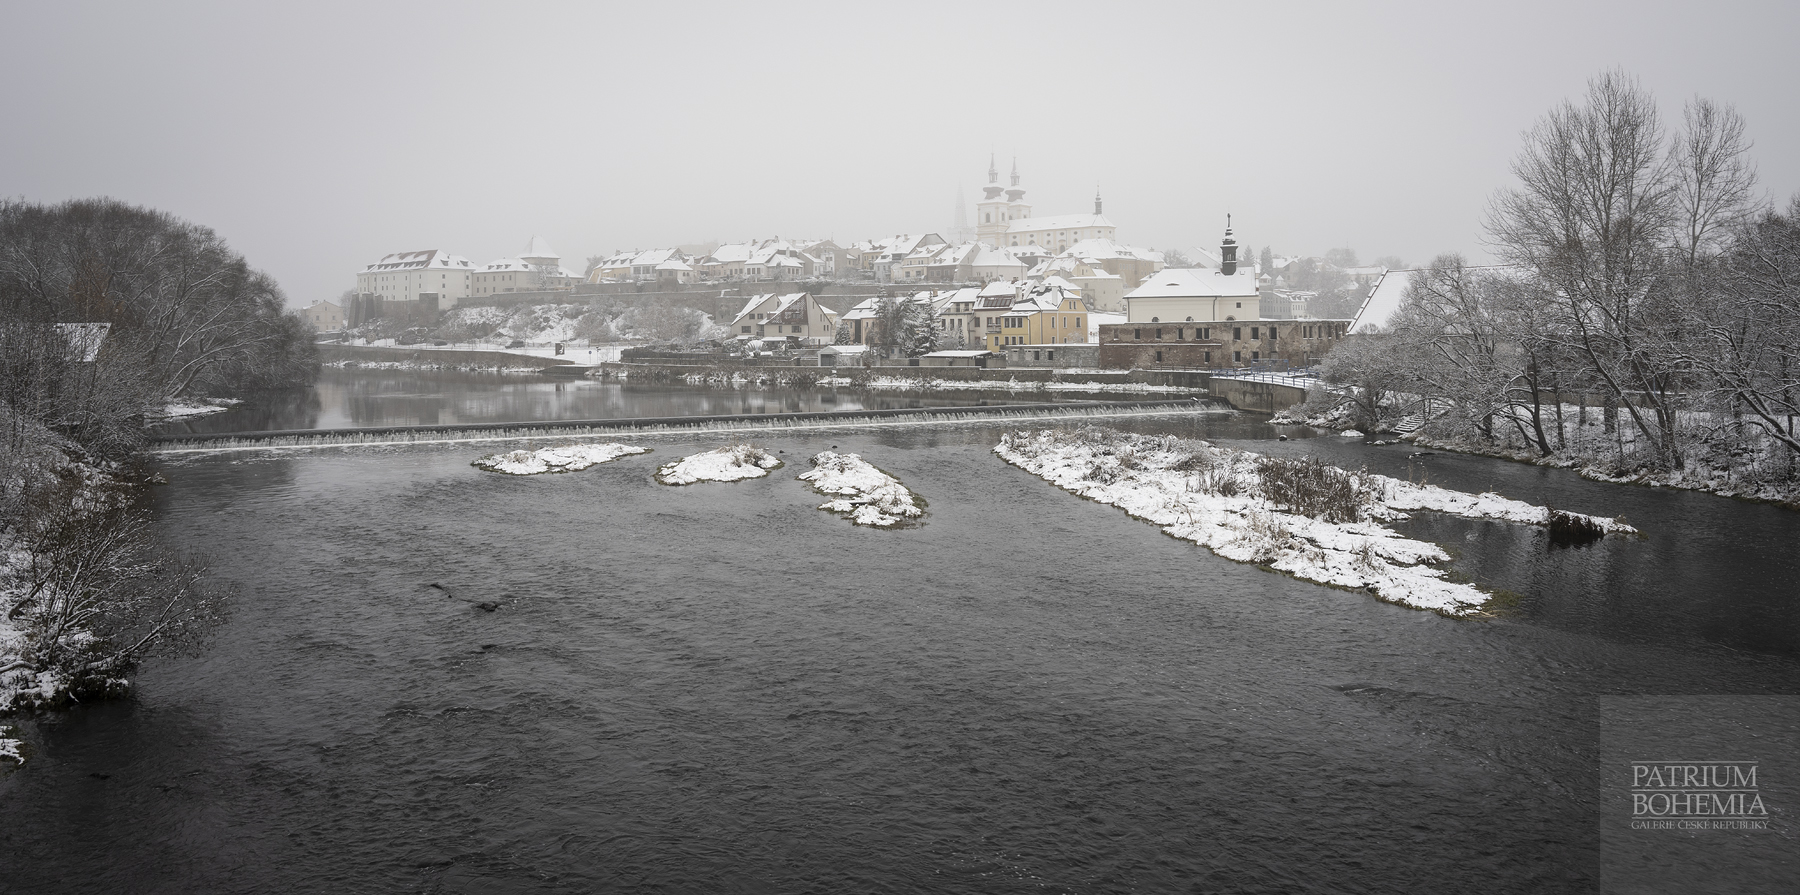 Řeka Ohře a část zasněženého města Kadaň v zimě, vlevo hrad Kadaň.